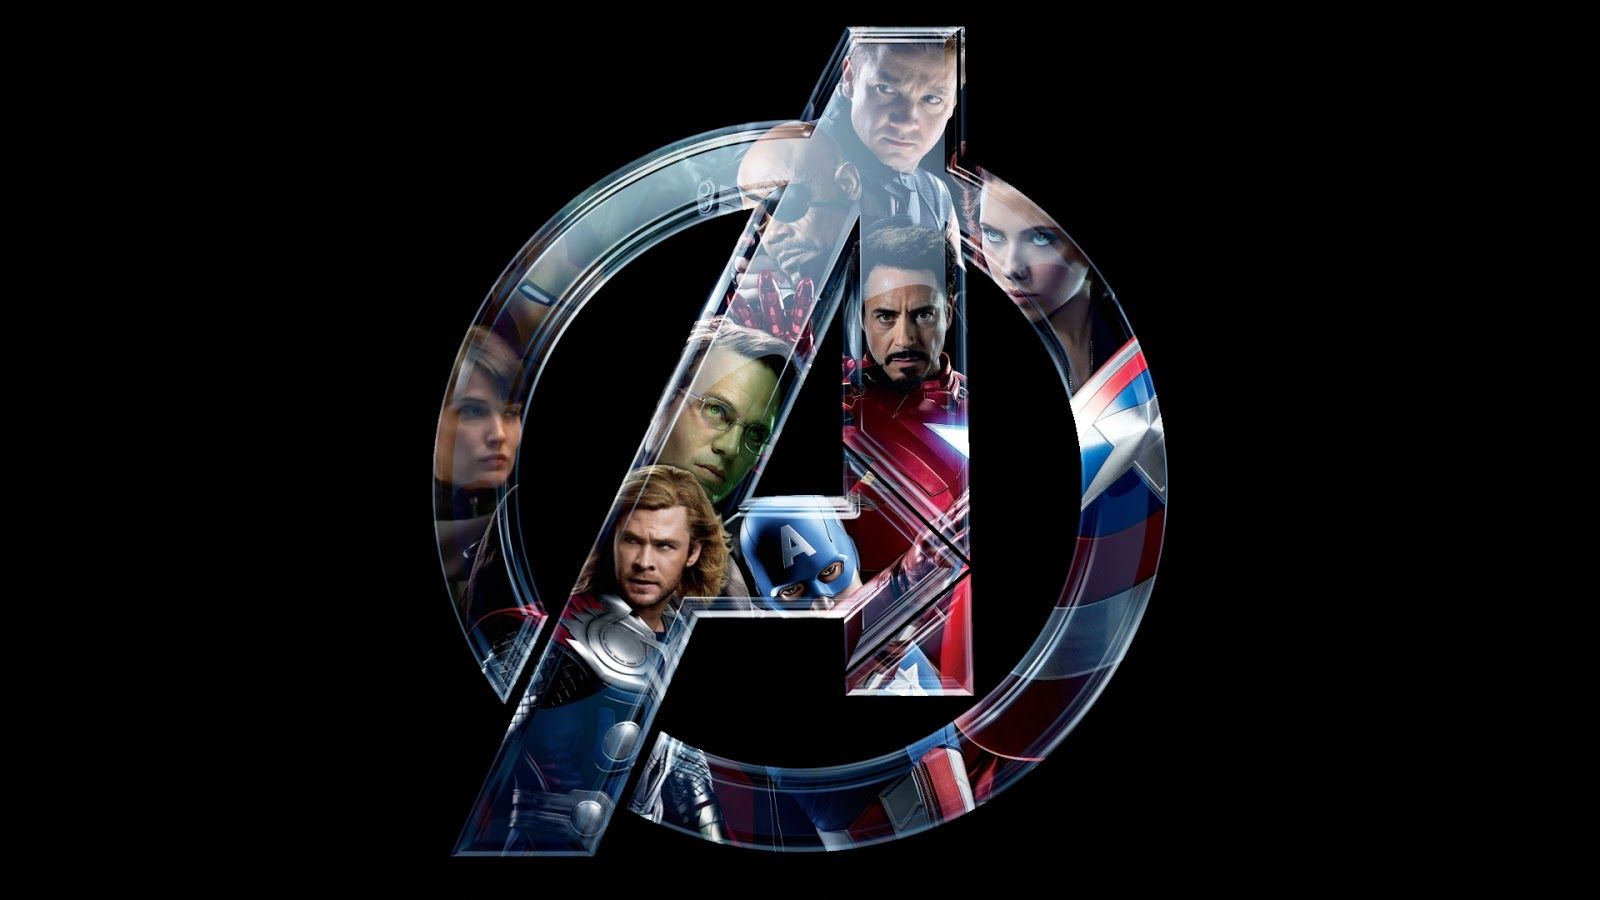 1080p Avengers Wallpaper Hd - HD Wallpaper 